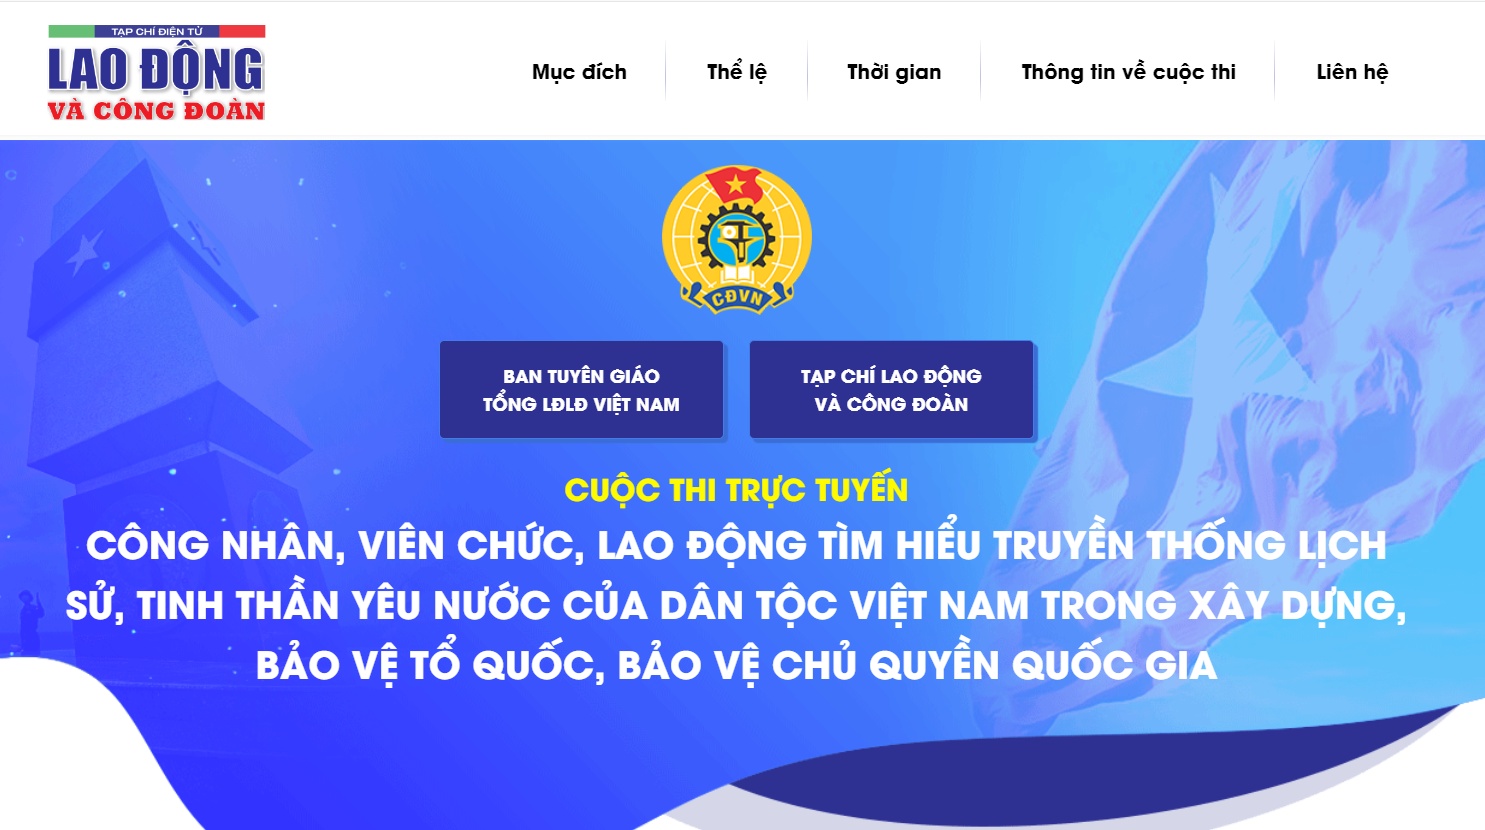 Bắt đầu Cuộc thi CNVCLĐ tìm hiểu truyền thống lịch sử dân tộc Việt Nam